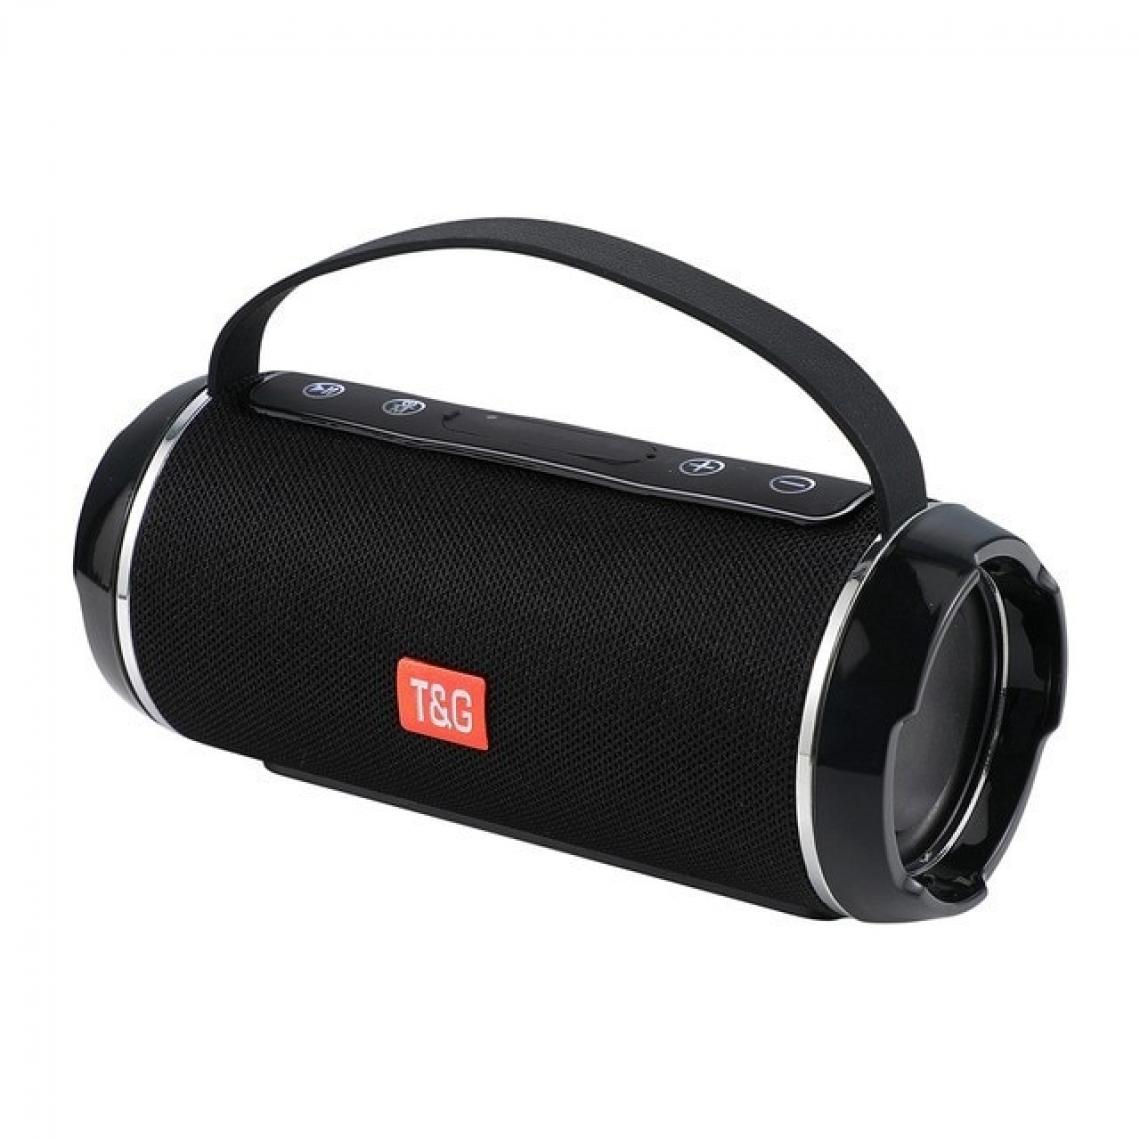 Universal - Haut-parleurs Bluetooth portables extérieurs noirs Haut-parleur audio colonne subwoofer Music Center haut-parleurs intégrés 3D stéréo radio(Le noir) - Enceinte PC